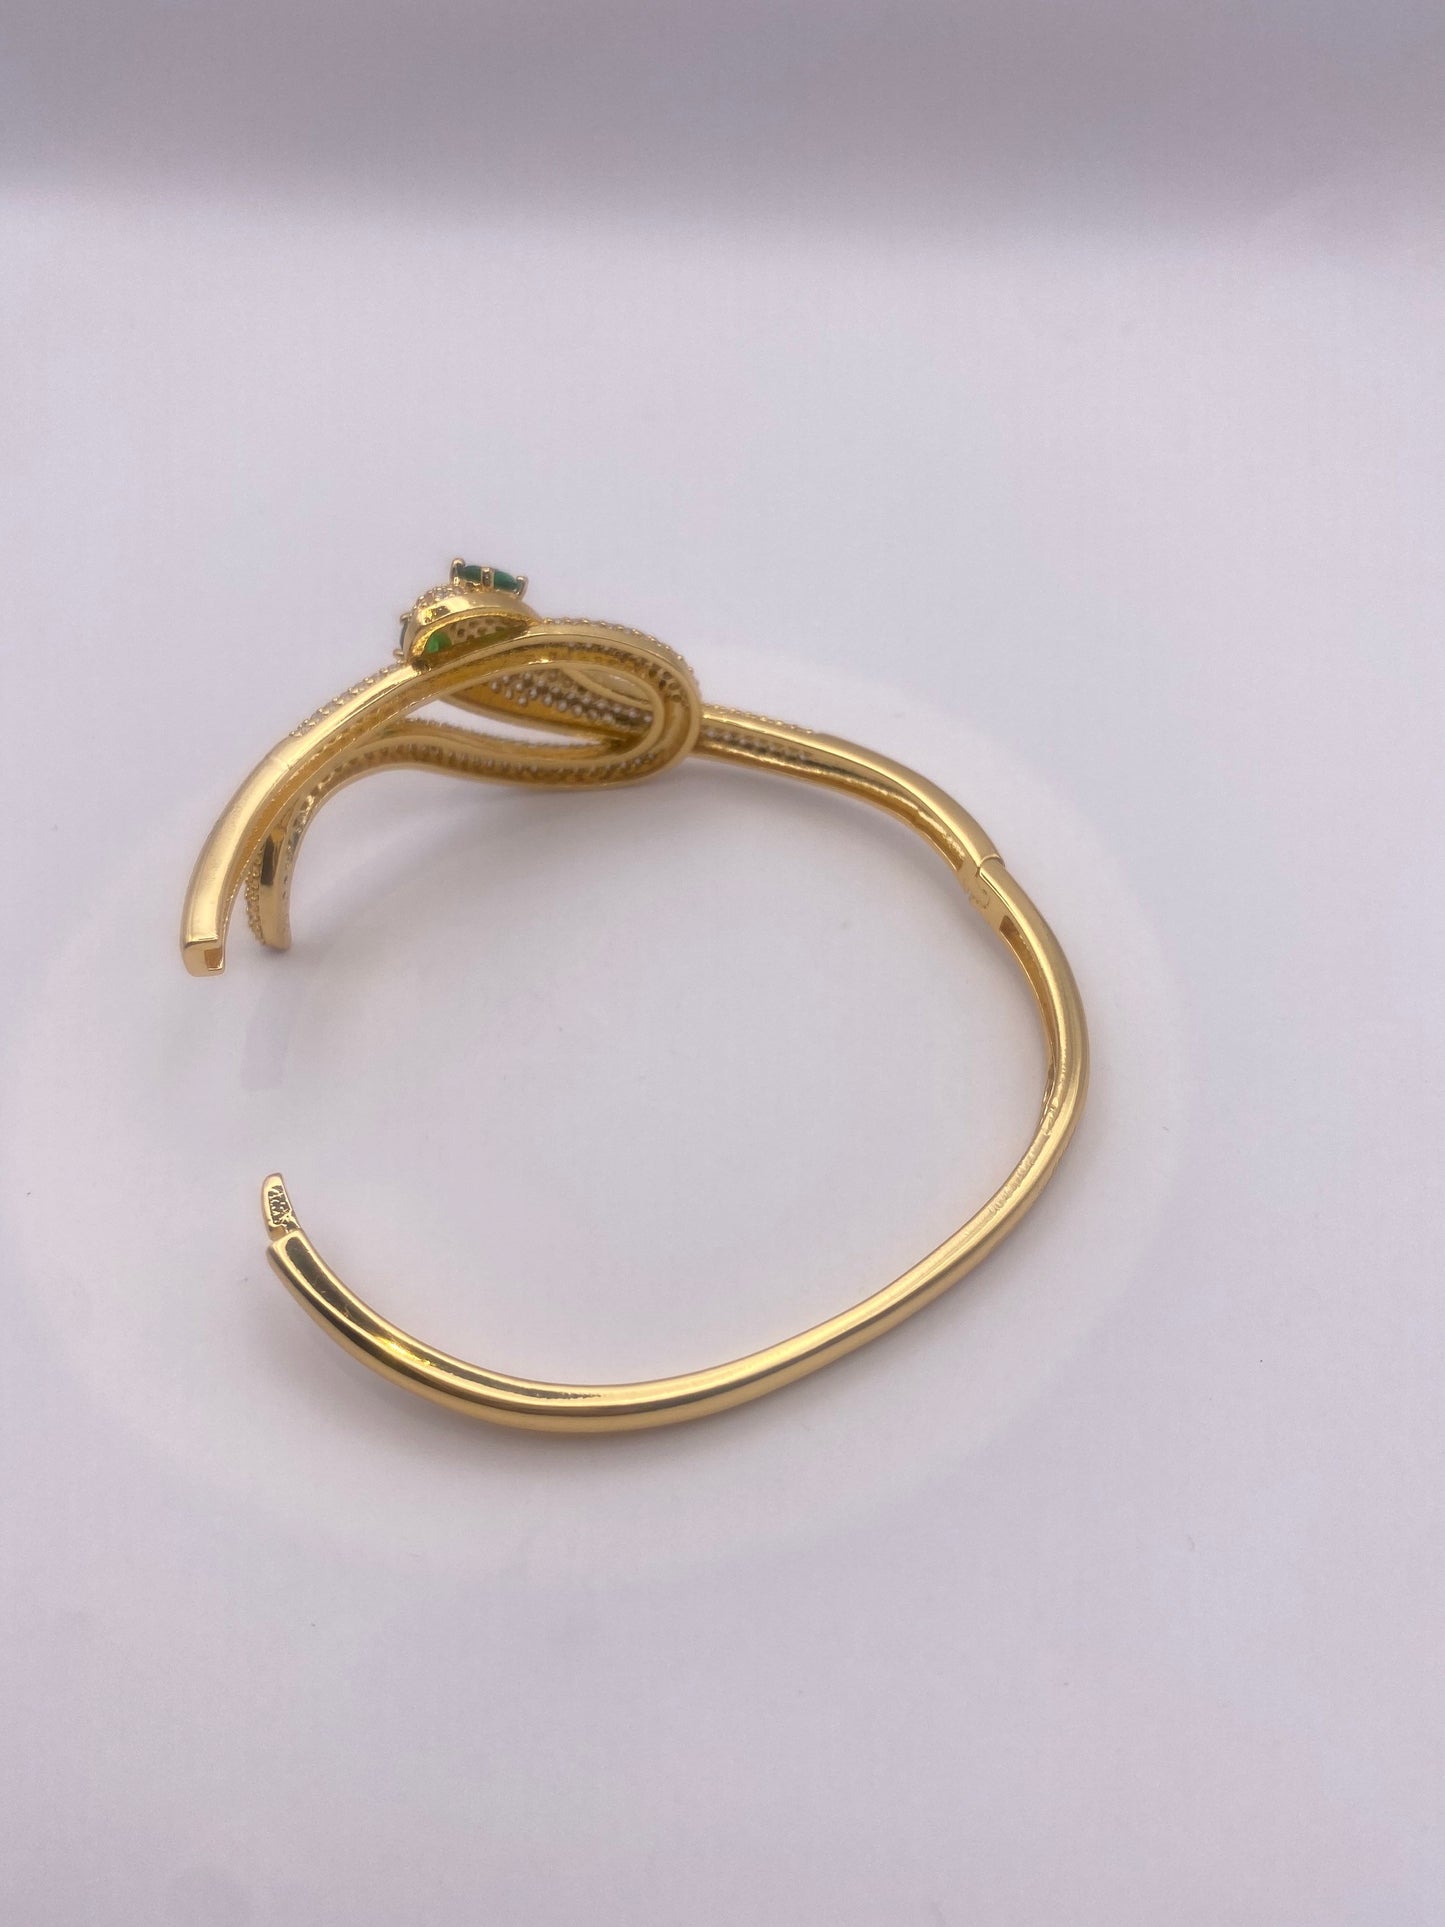 Vintage Snake Bangle Bracelet Gold filled Green Crystal Eyes